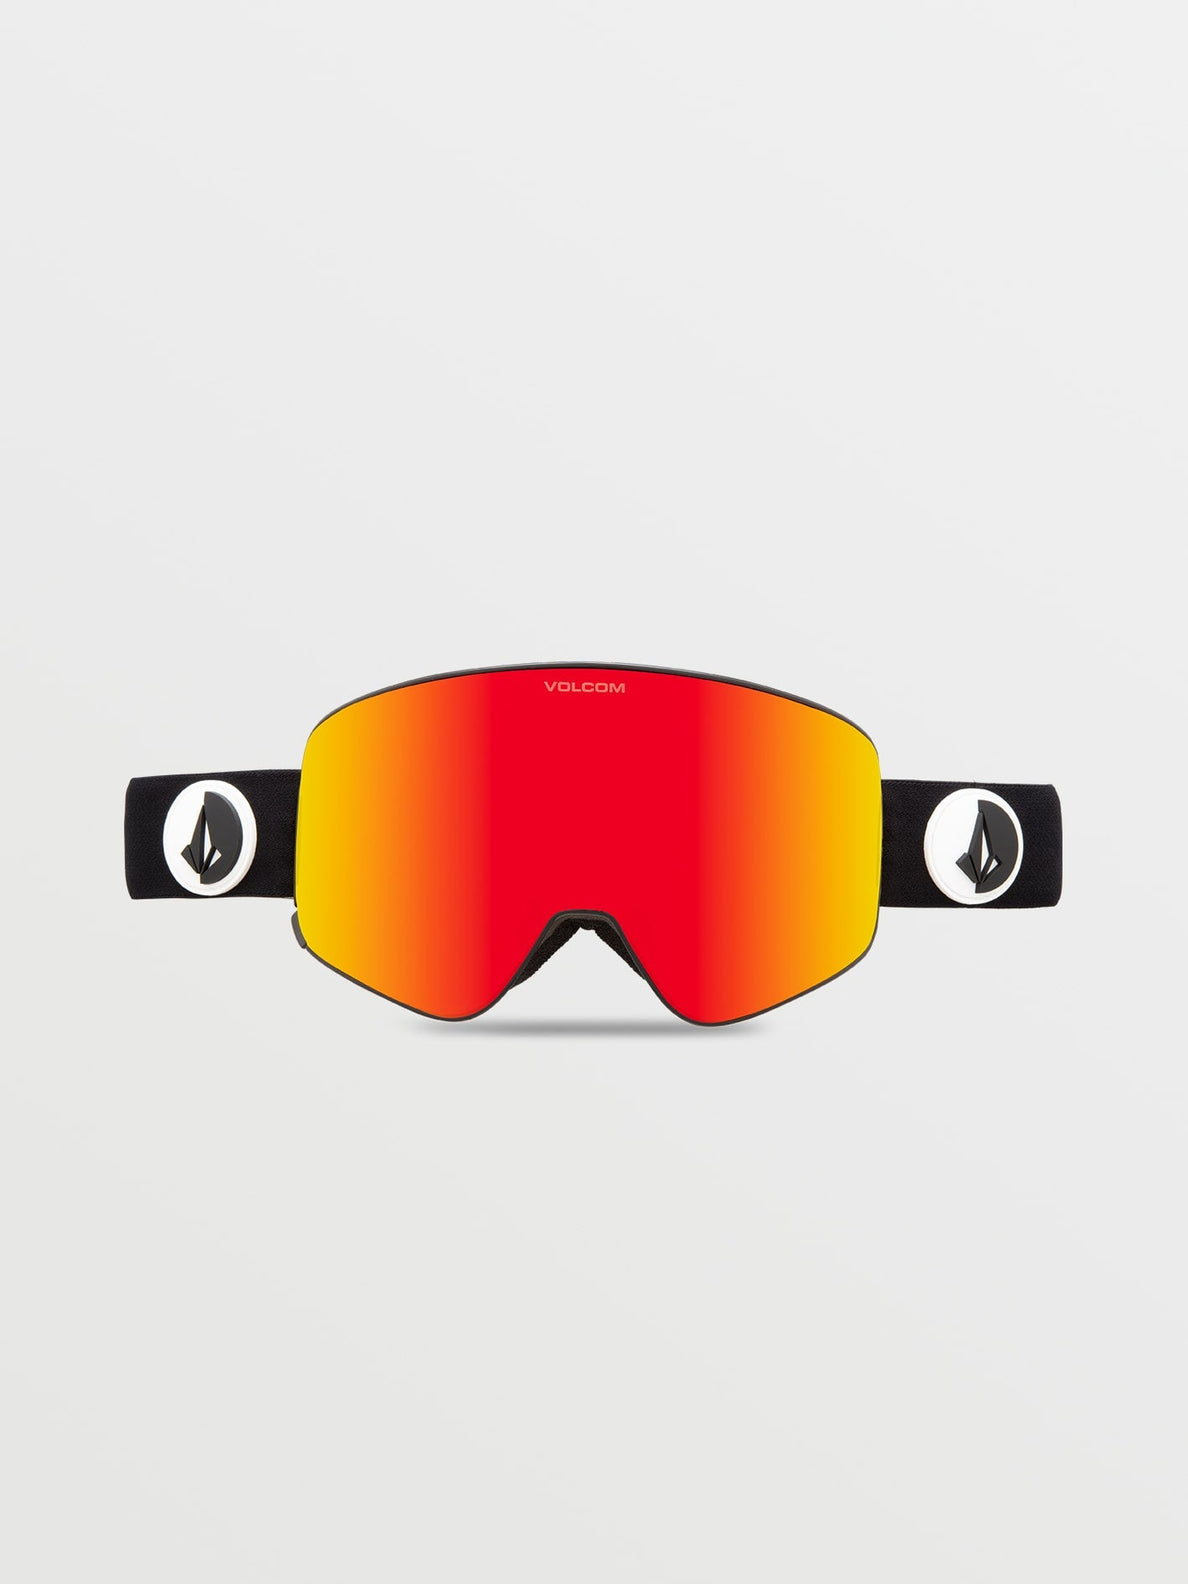 Gafas de ventisca Volcom Odyssey Gloss Black (Bonus Lens) + Red Chrome | surfdevils.com